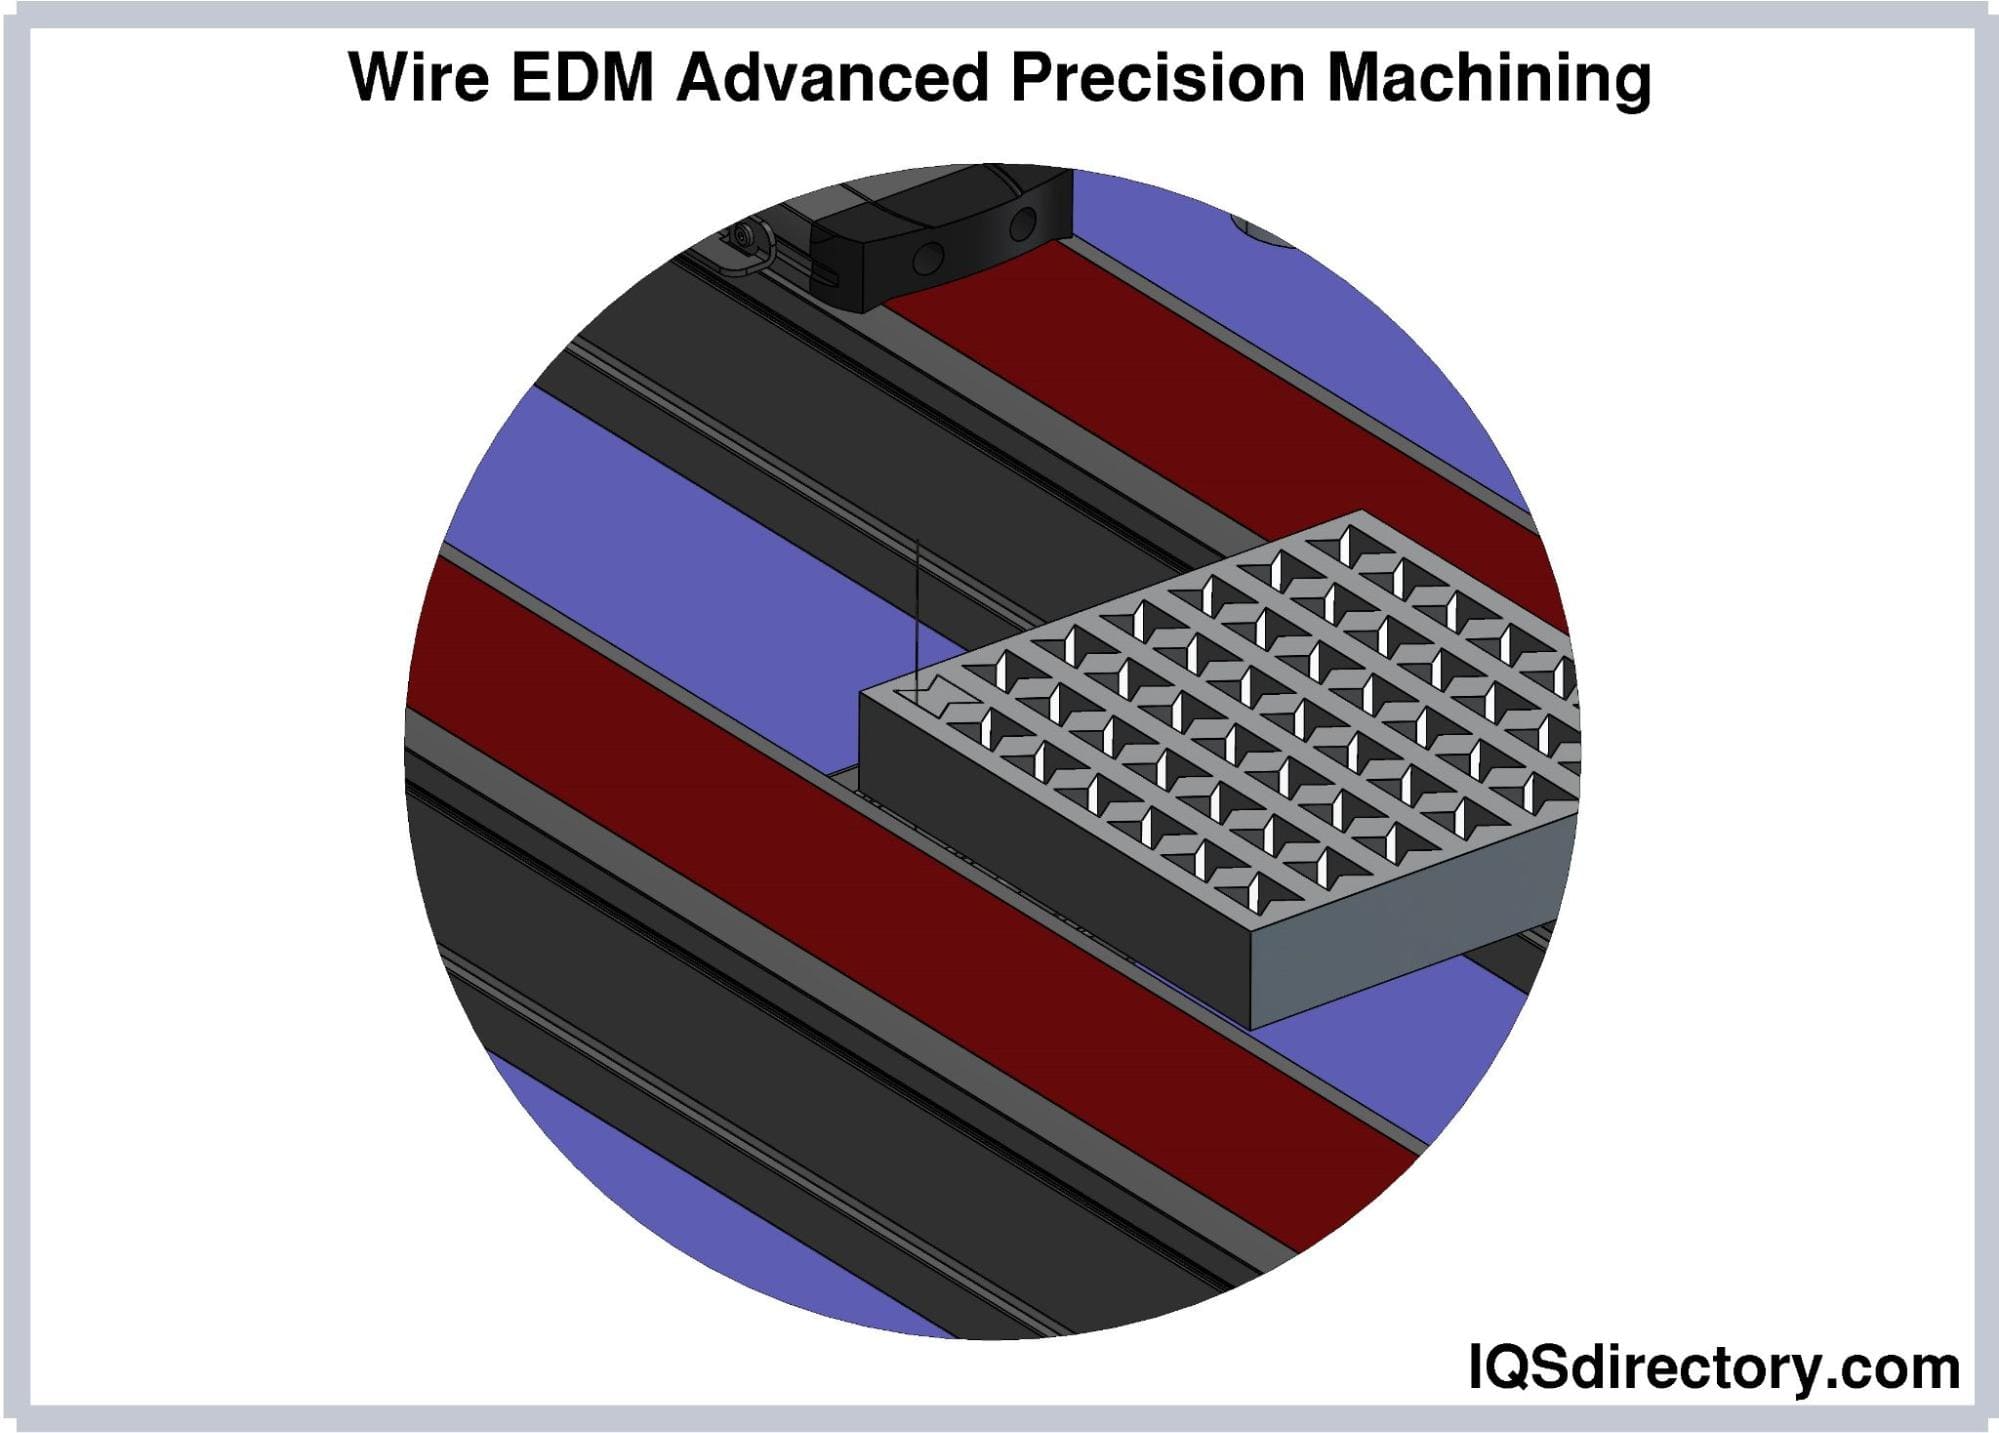 Wire EDM Advanced Precision Machining